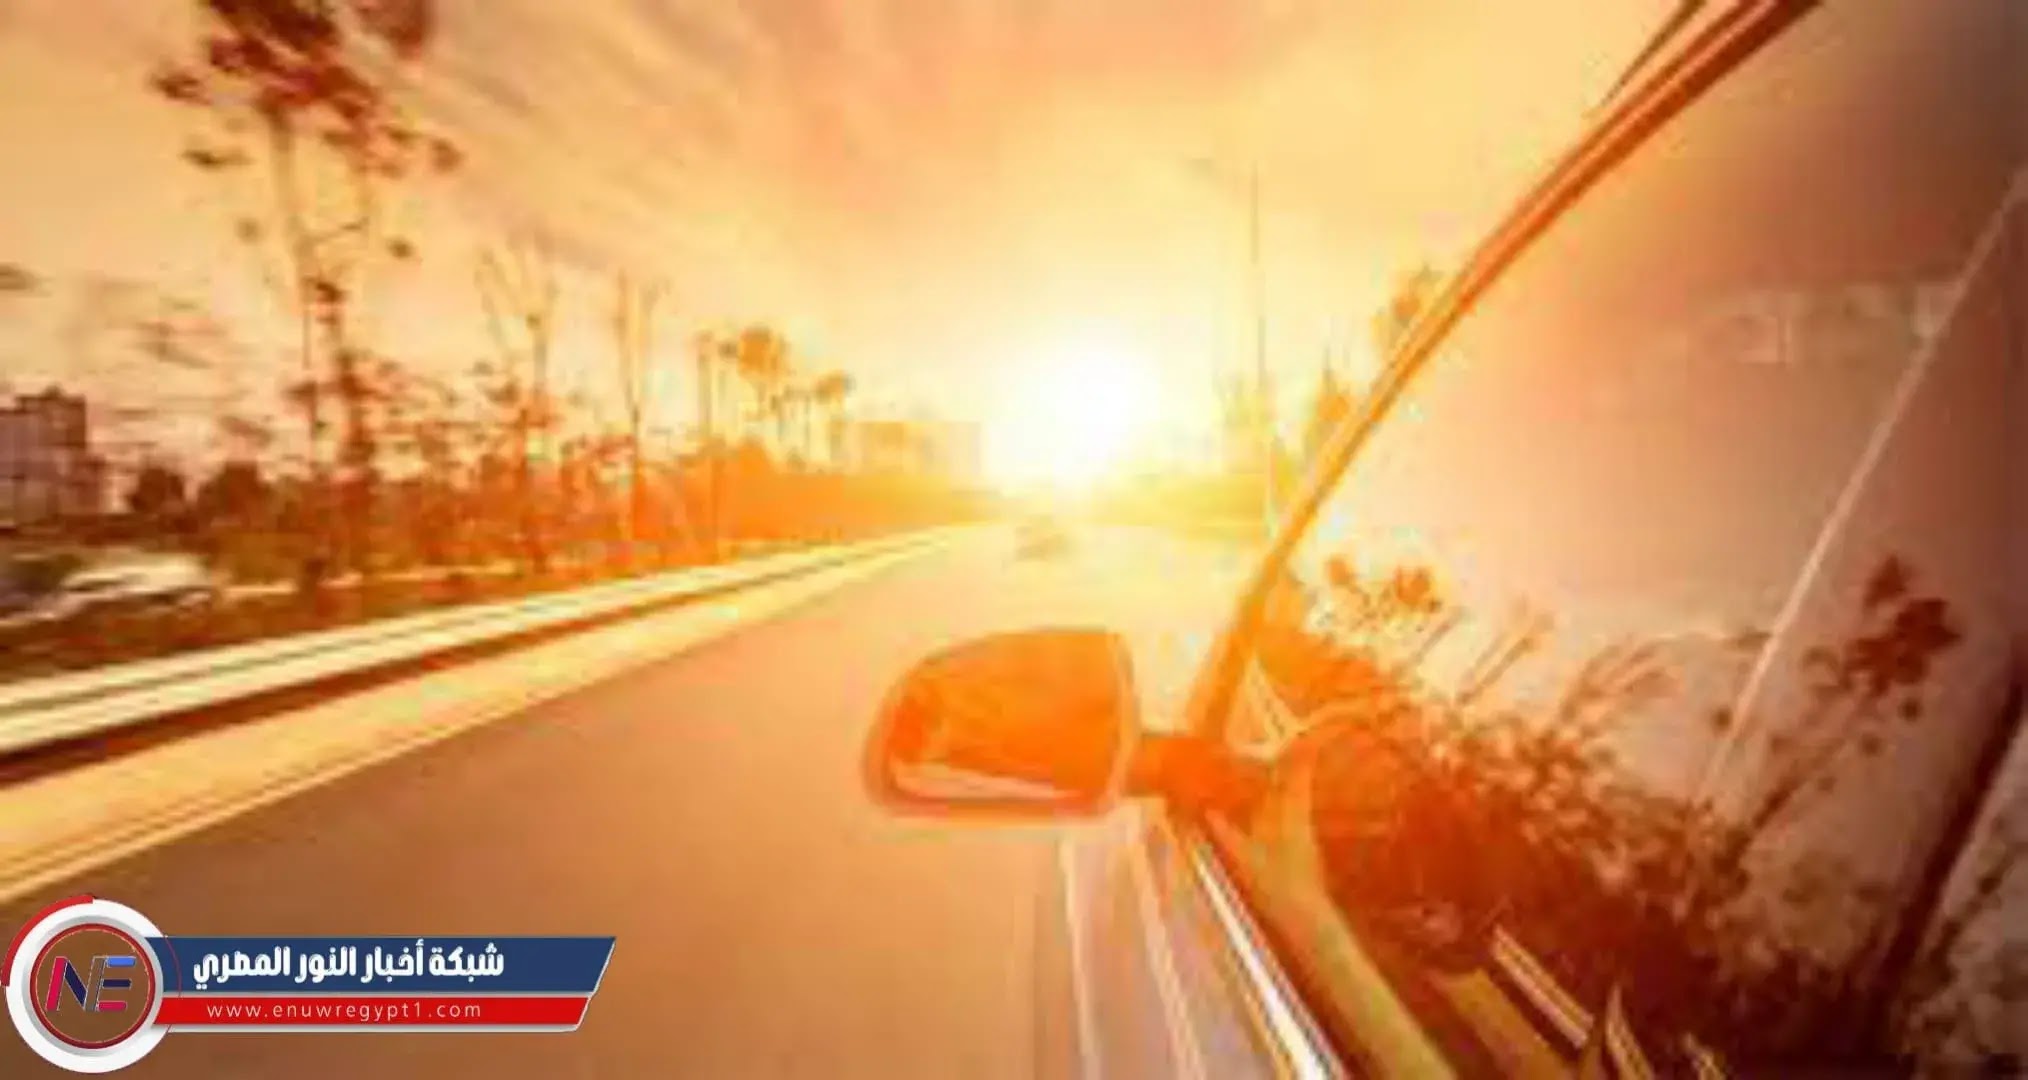 6 نصائح لحماية سيارتك من الحرارة الشديدة وأشعة الشمس